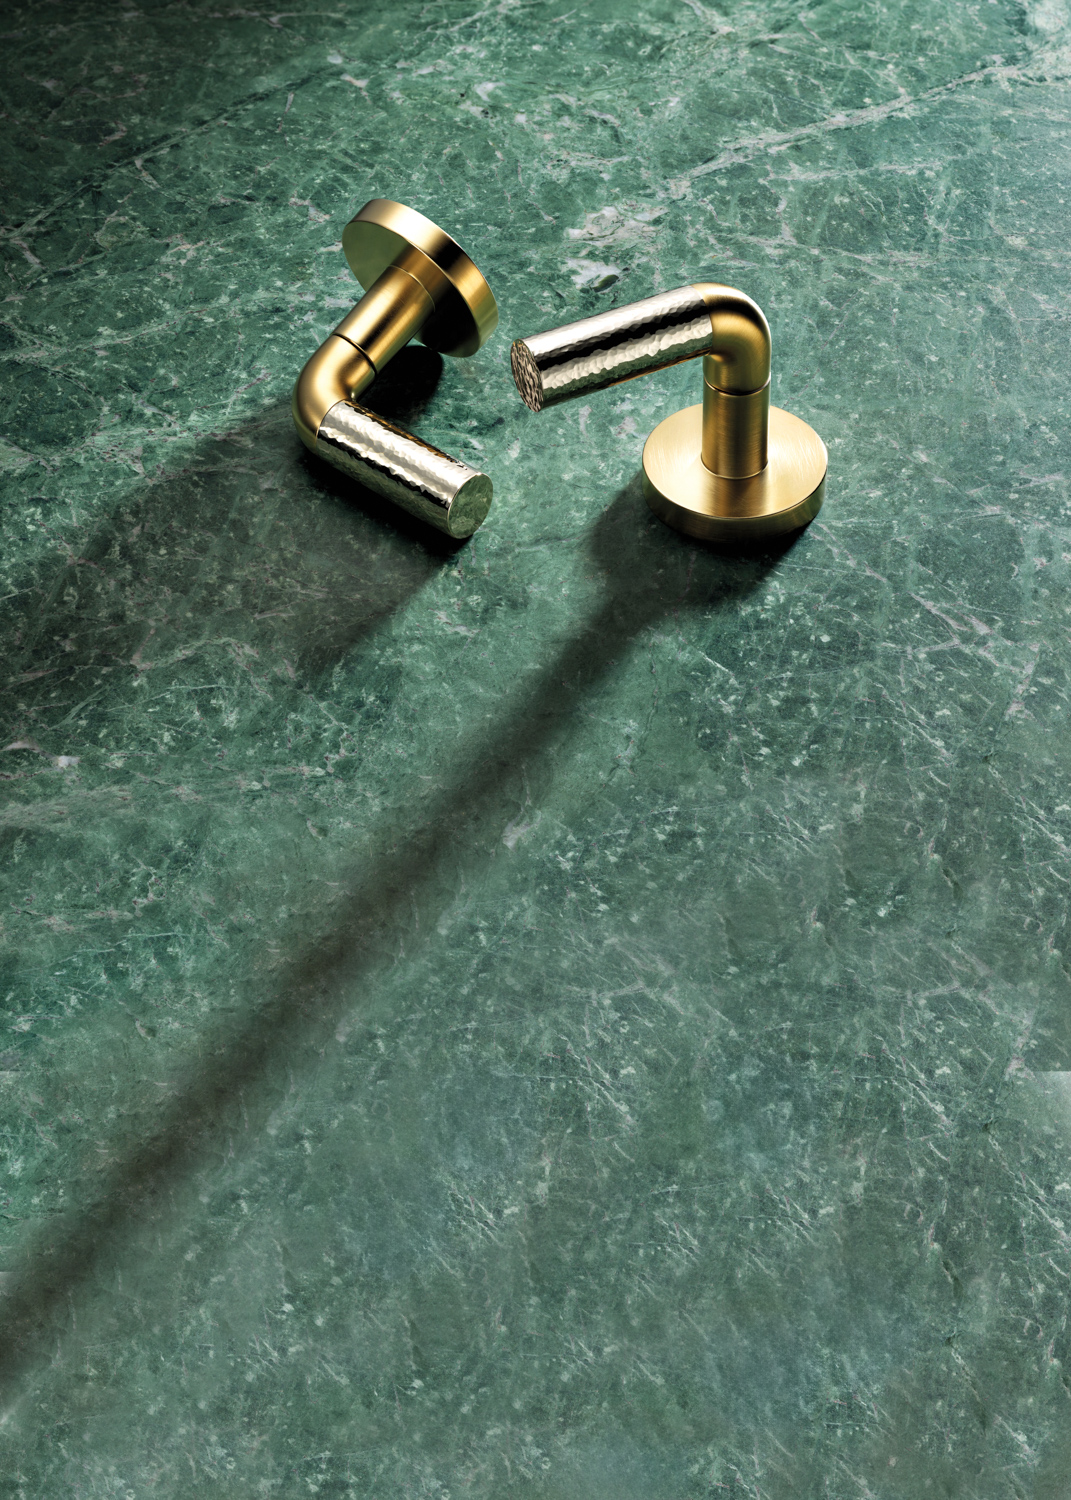 brass fixtures against an emerald green countertop